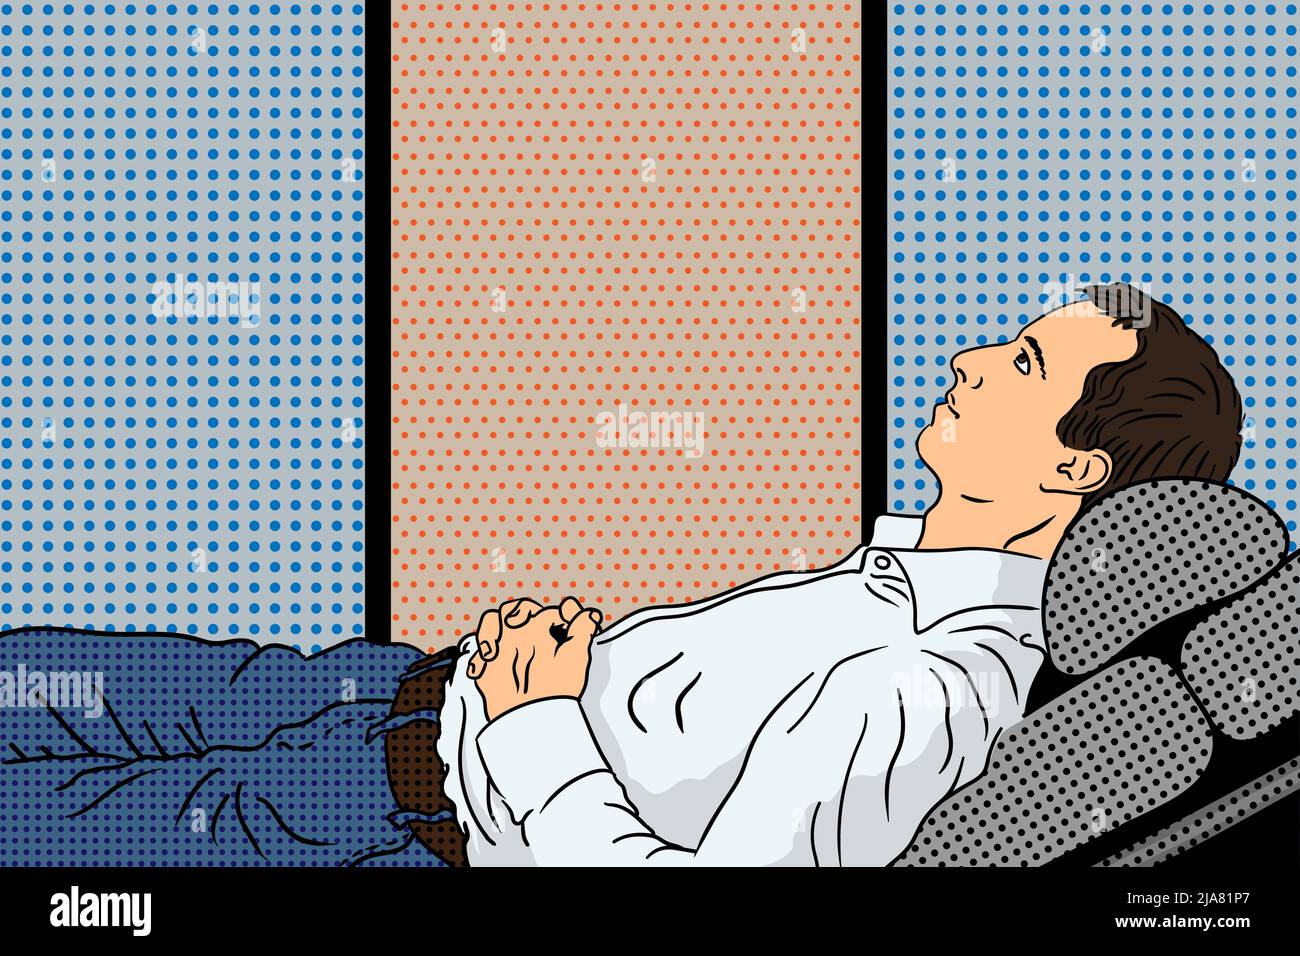 Ein junger Mann in einem weißen Hemd liegt während einer Sitzung mit einem Psychoanalytiker mit gefalteten Händen auf einem Sessel. Pin-up-Style-Illustration. Stock Vektor